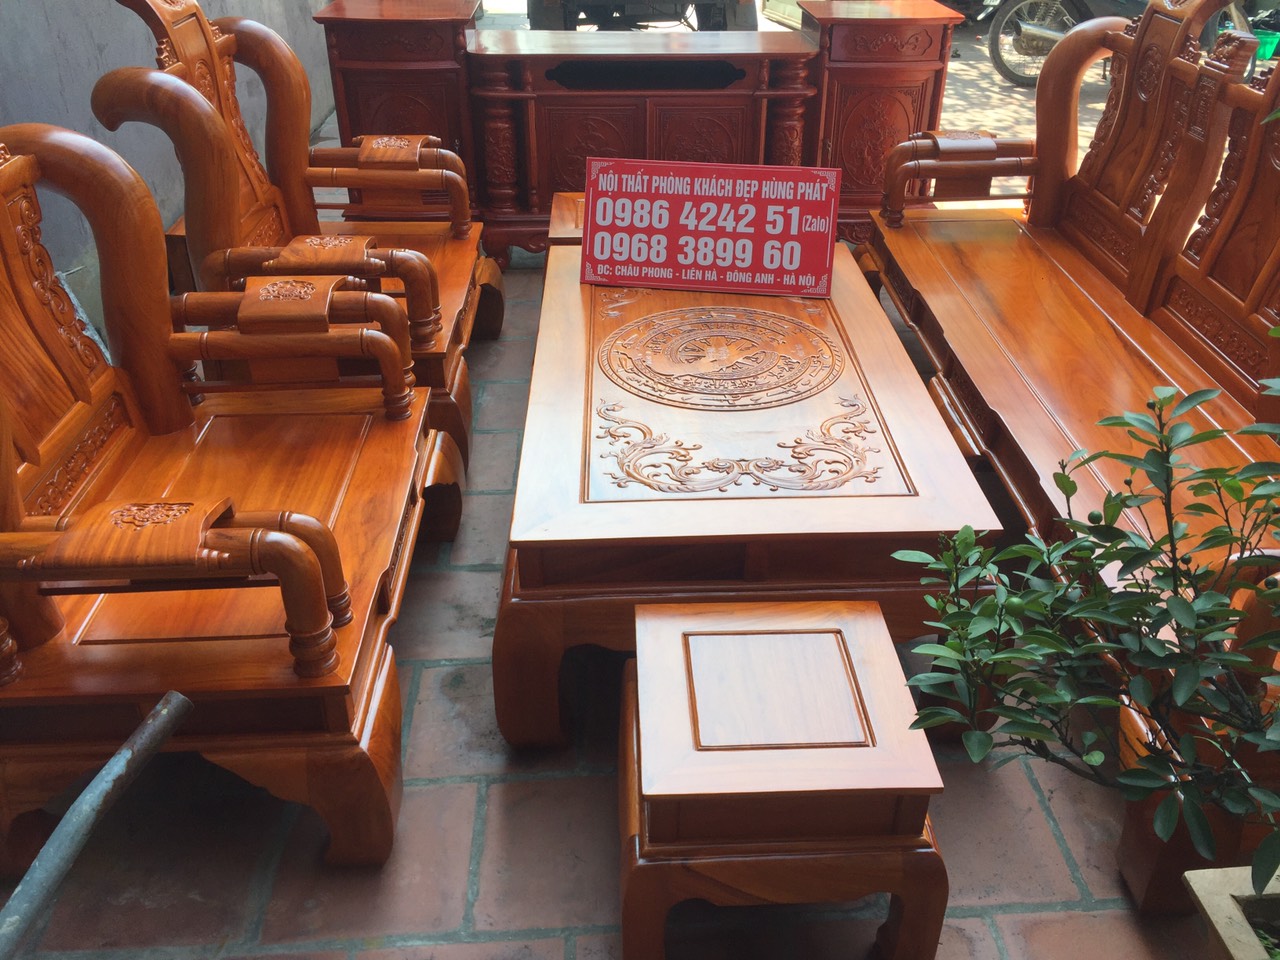 Bộ bàn ghế phòng khách gỗ gõ đỏ là sự kết hợp hoàn hảo giữa thiết kế và chất liệu gỗ cao cấp, tạo ra một sản phẩm vô cùng đẳng cấp. Kiểu dáng trang nhã, màu sắc đẹp mắt, giúp không gian sống của bạn trở nên sang trọng và đẳng cấp hơn.